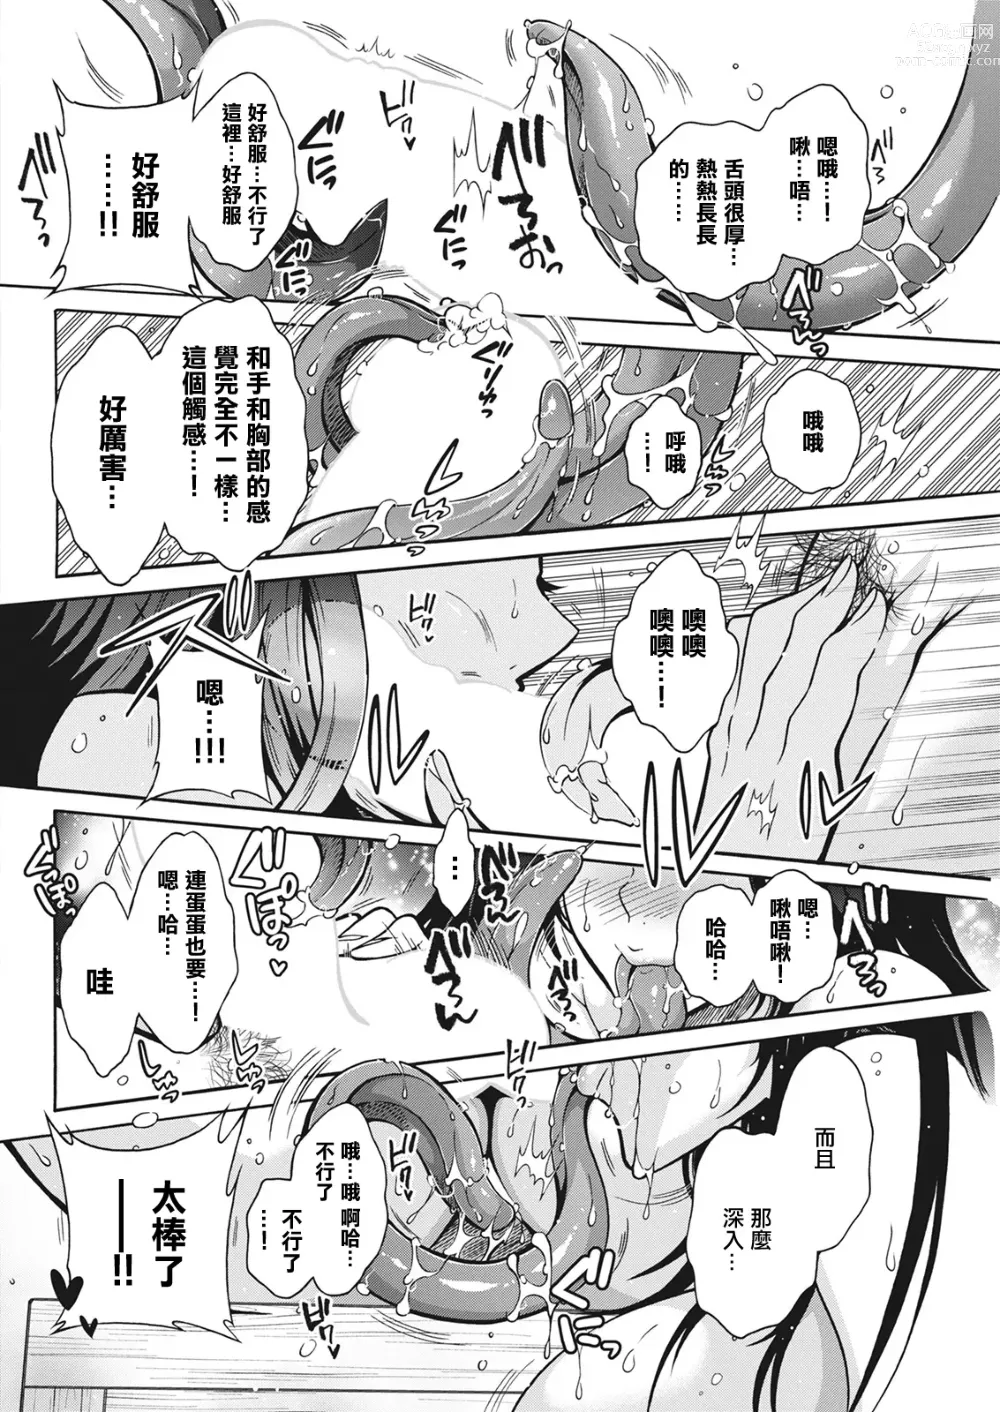 Page 10 of manga 妖怪HHH